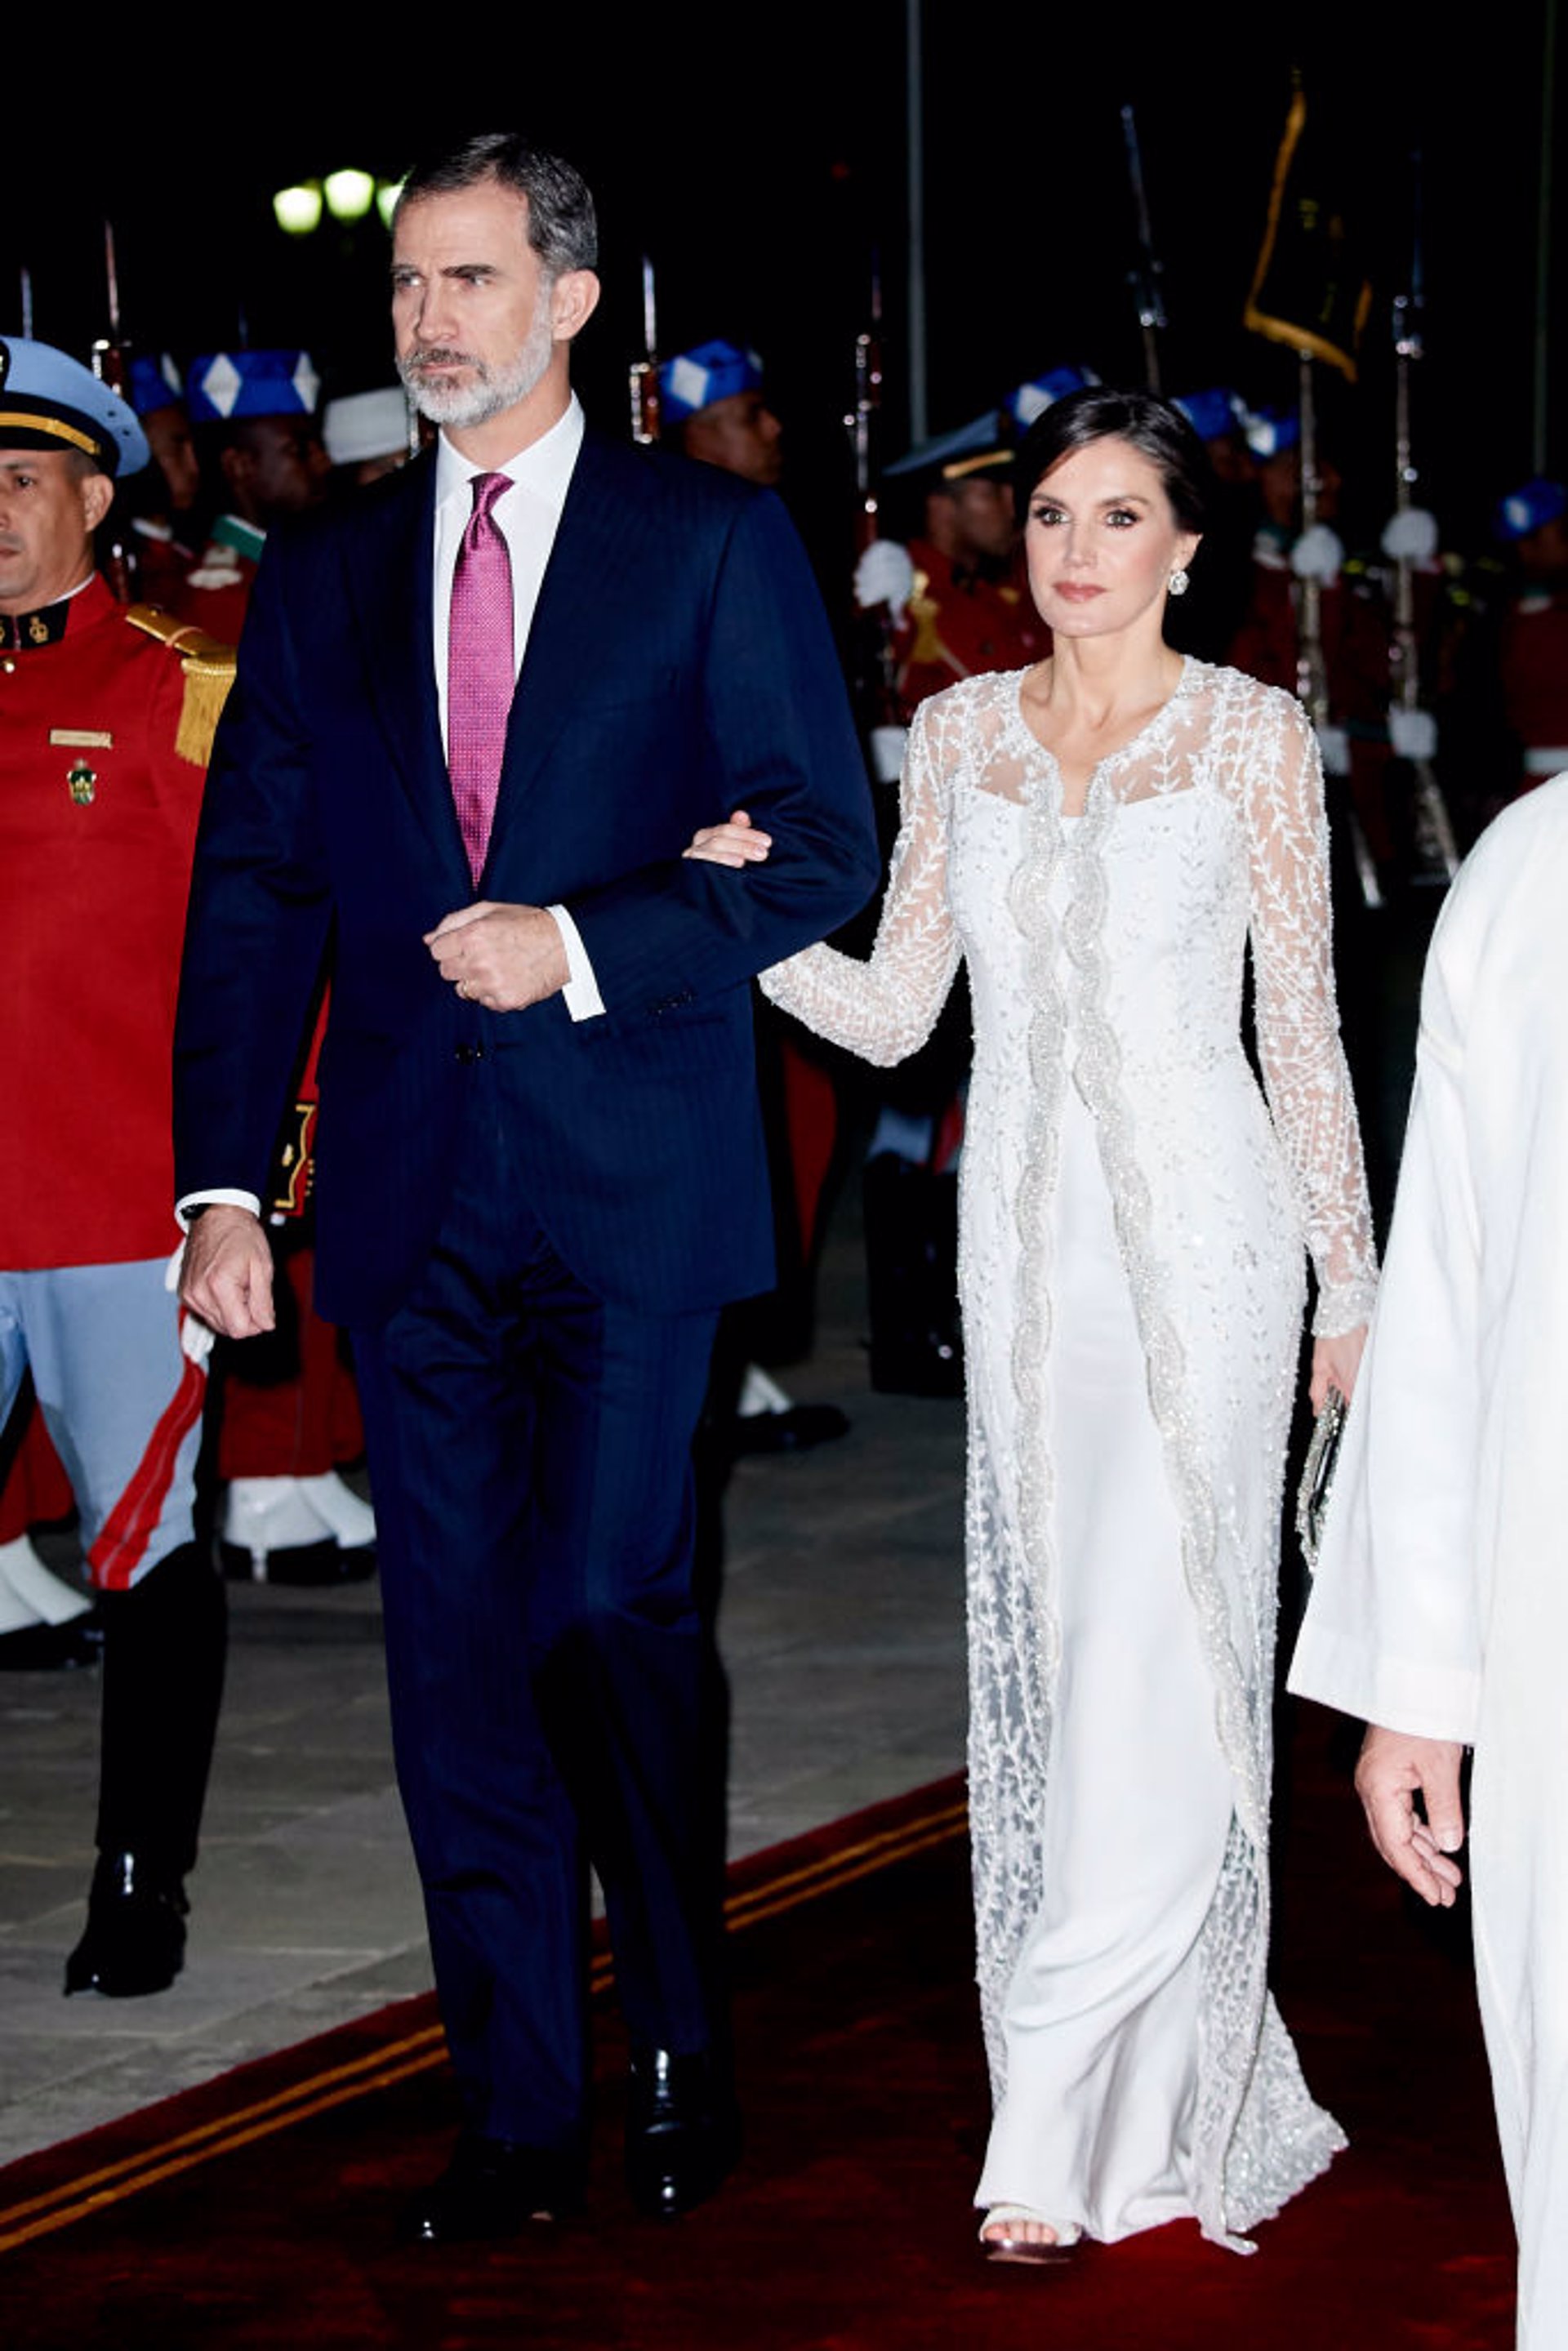 FELIPE Y LETIZIA EN MARRUECOS en 2019. El Rey Felipe lucía corbata frambuesa en tono fucsia. La diferencia sustancial con 2014 es que el monarca luce barba actualmente